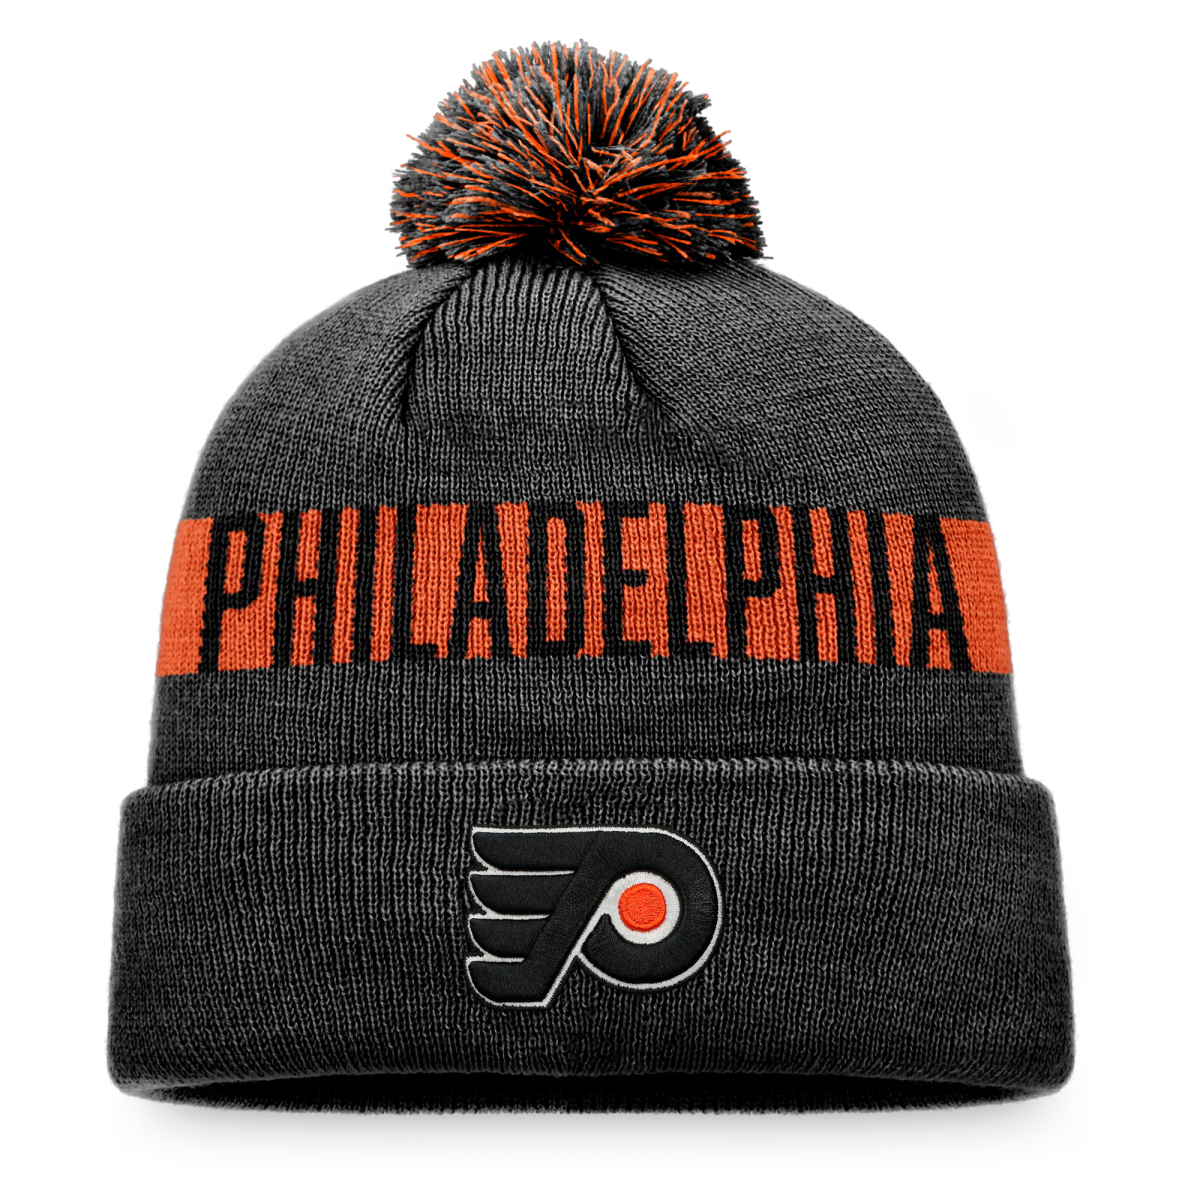 Philadelphia Flyers zimná čiapka Fundamental Beanie Cuff with Pom